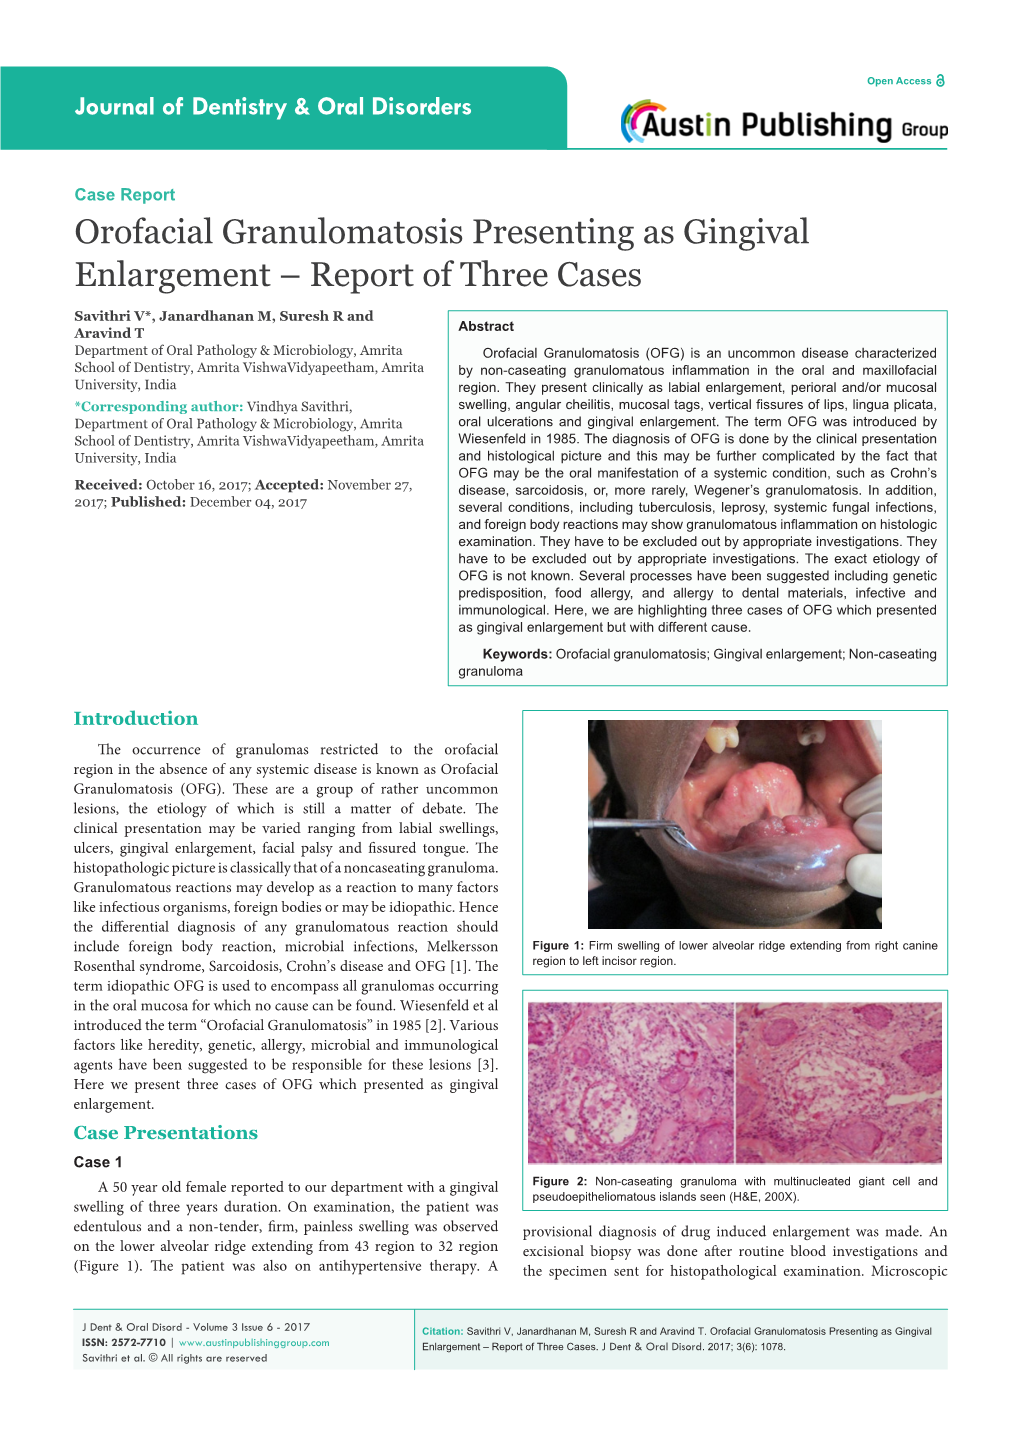 Orofacial Granulomatosis Presenting As Gingival Enlargement – Report of Three Cases